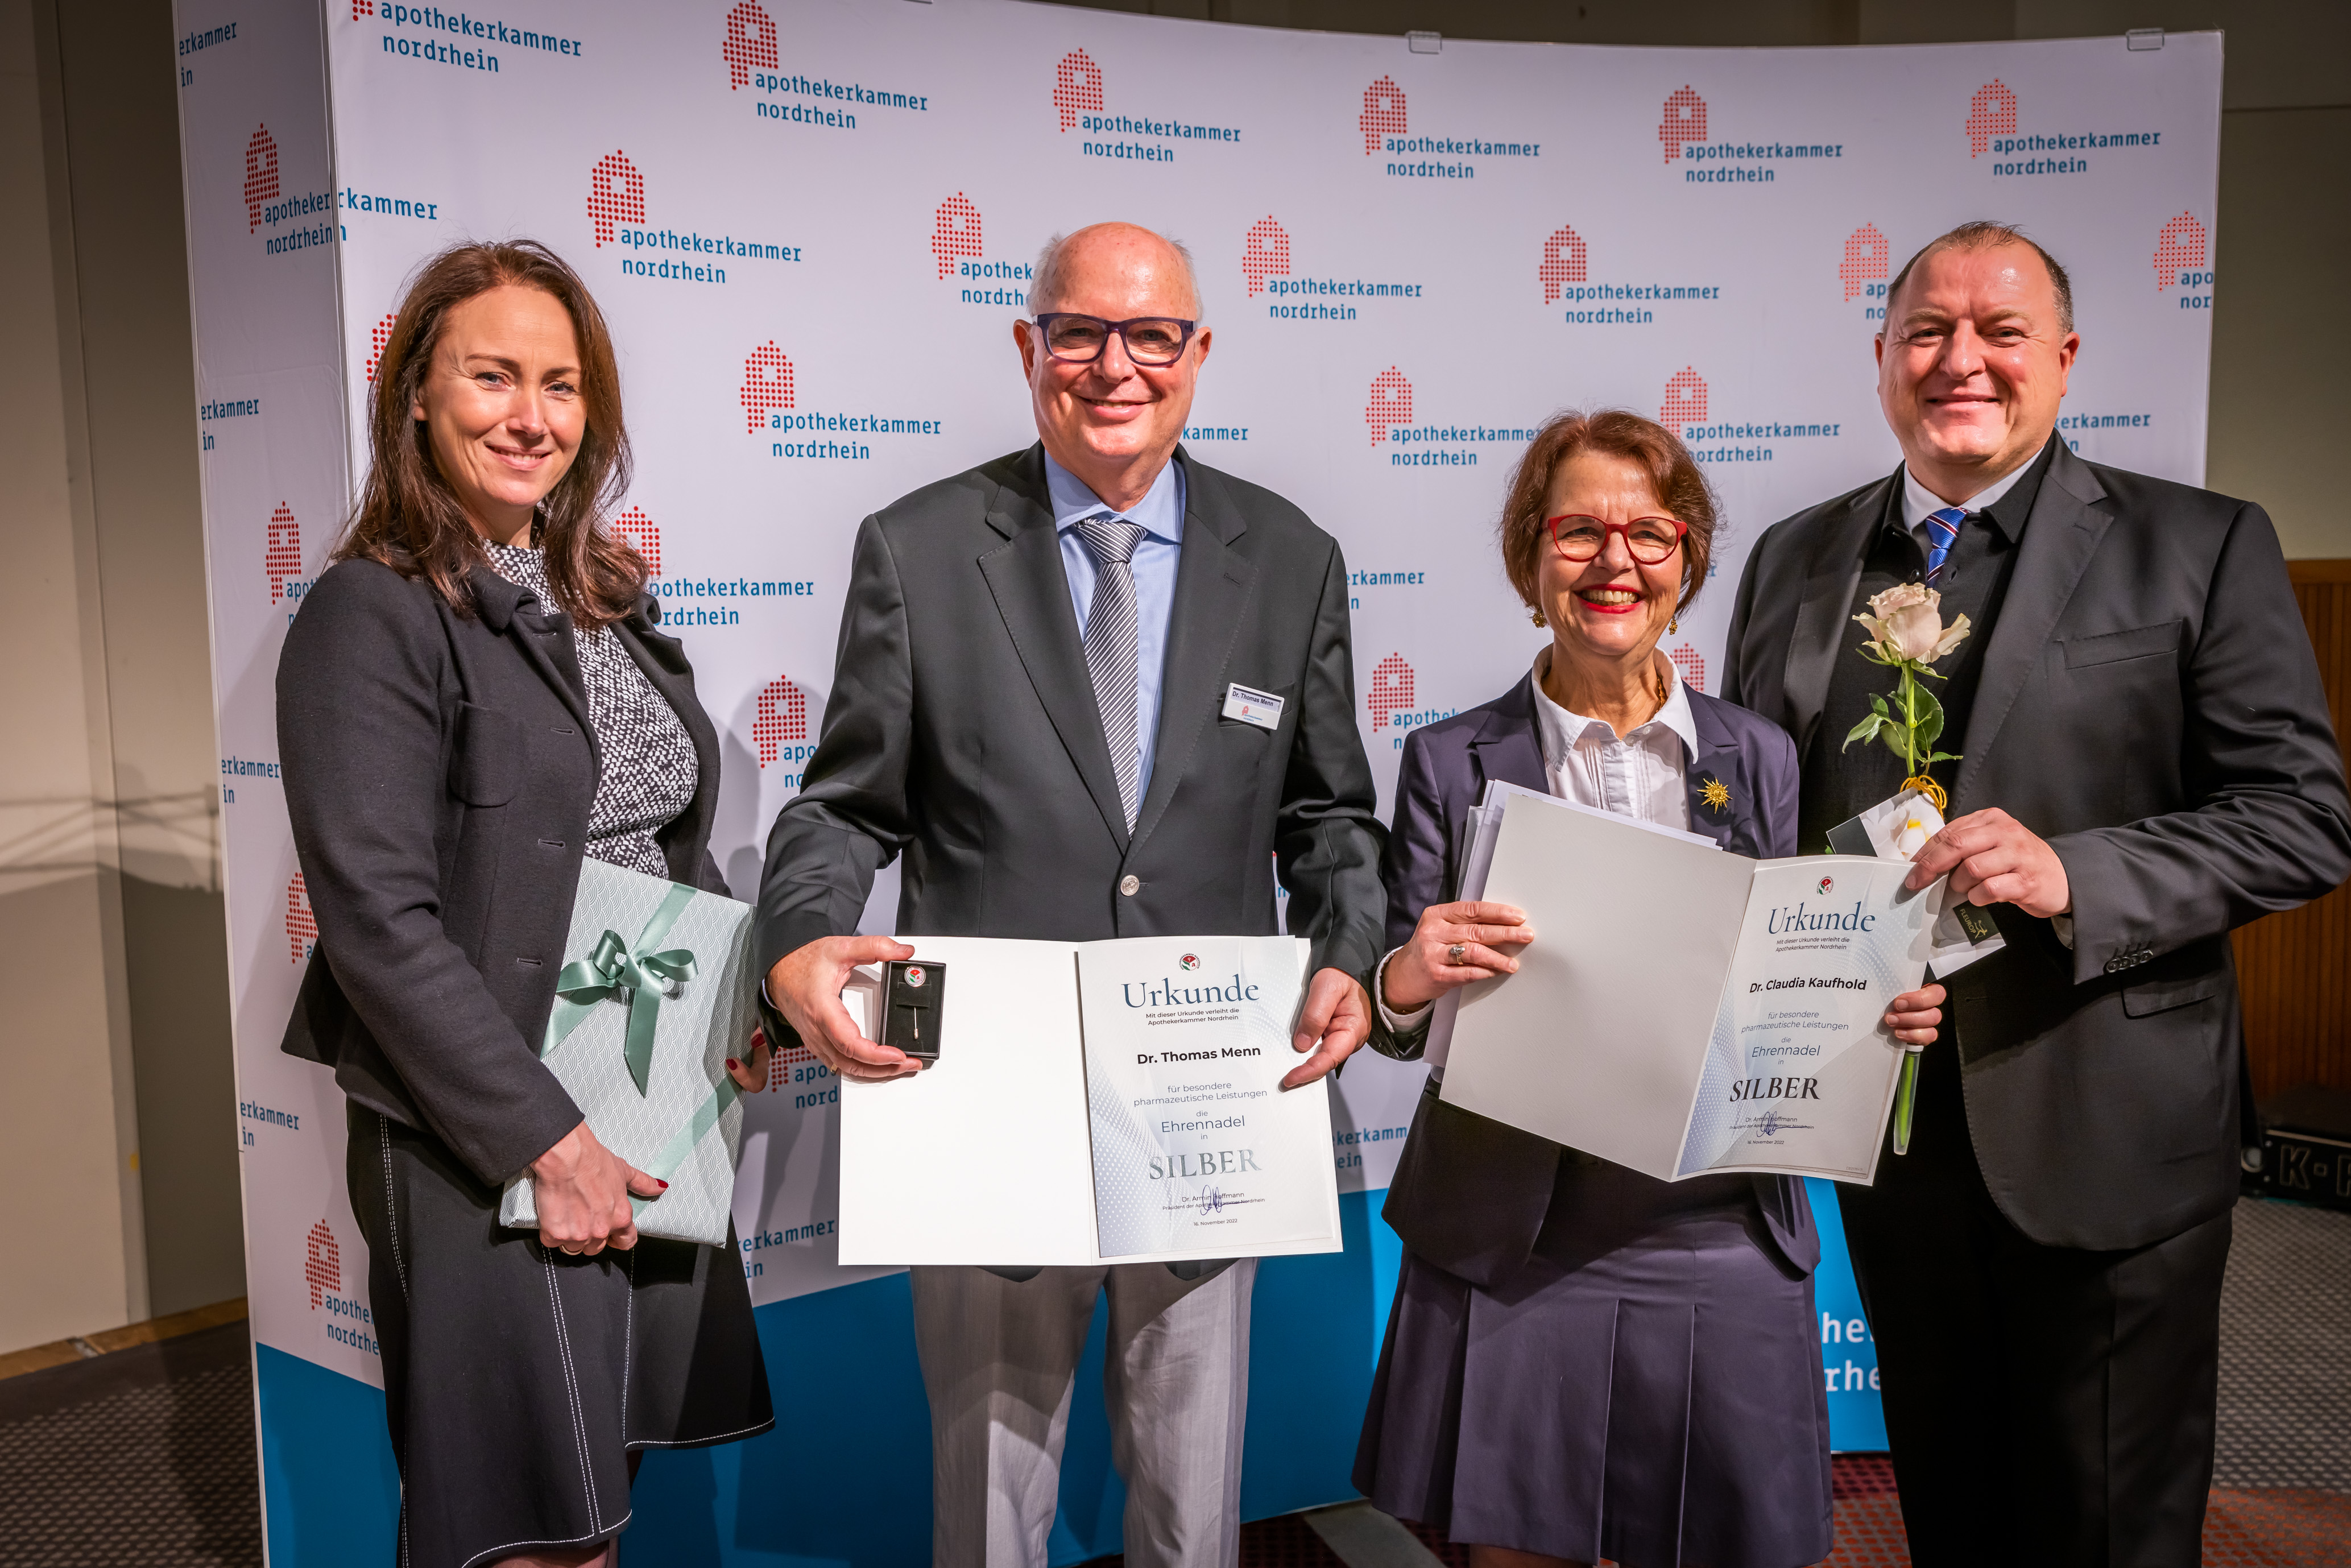 Dr. Claudia Kaufhold und Dr. Thomas Menn wurden mit der Ehrennadel in Silber ausgezeichnet. Präsident Dr. Armin Hoffmann und Vizepräsidentin Kathrin Luboldt gratulierten.